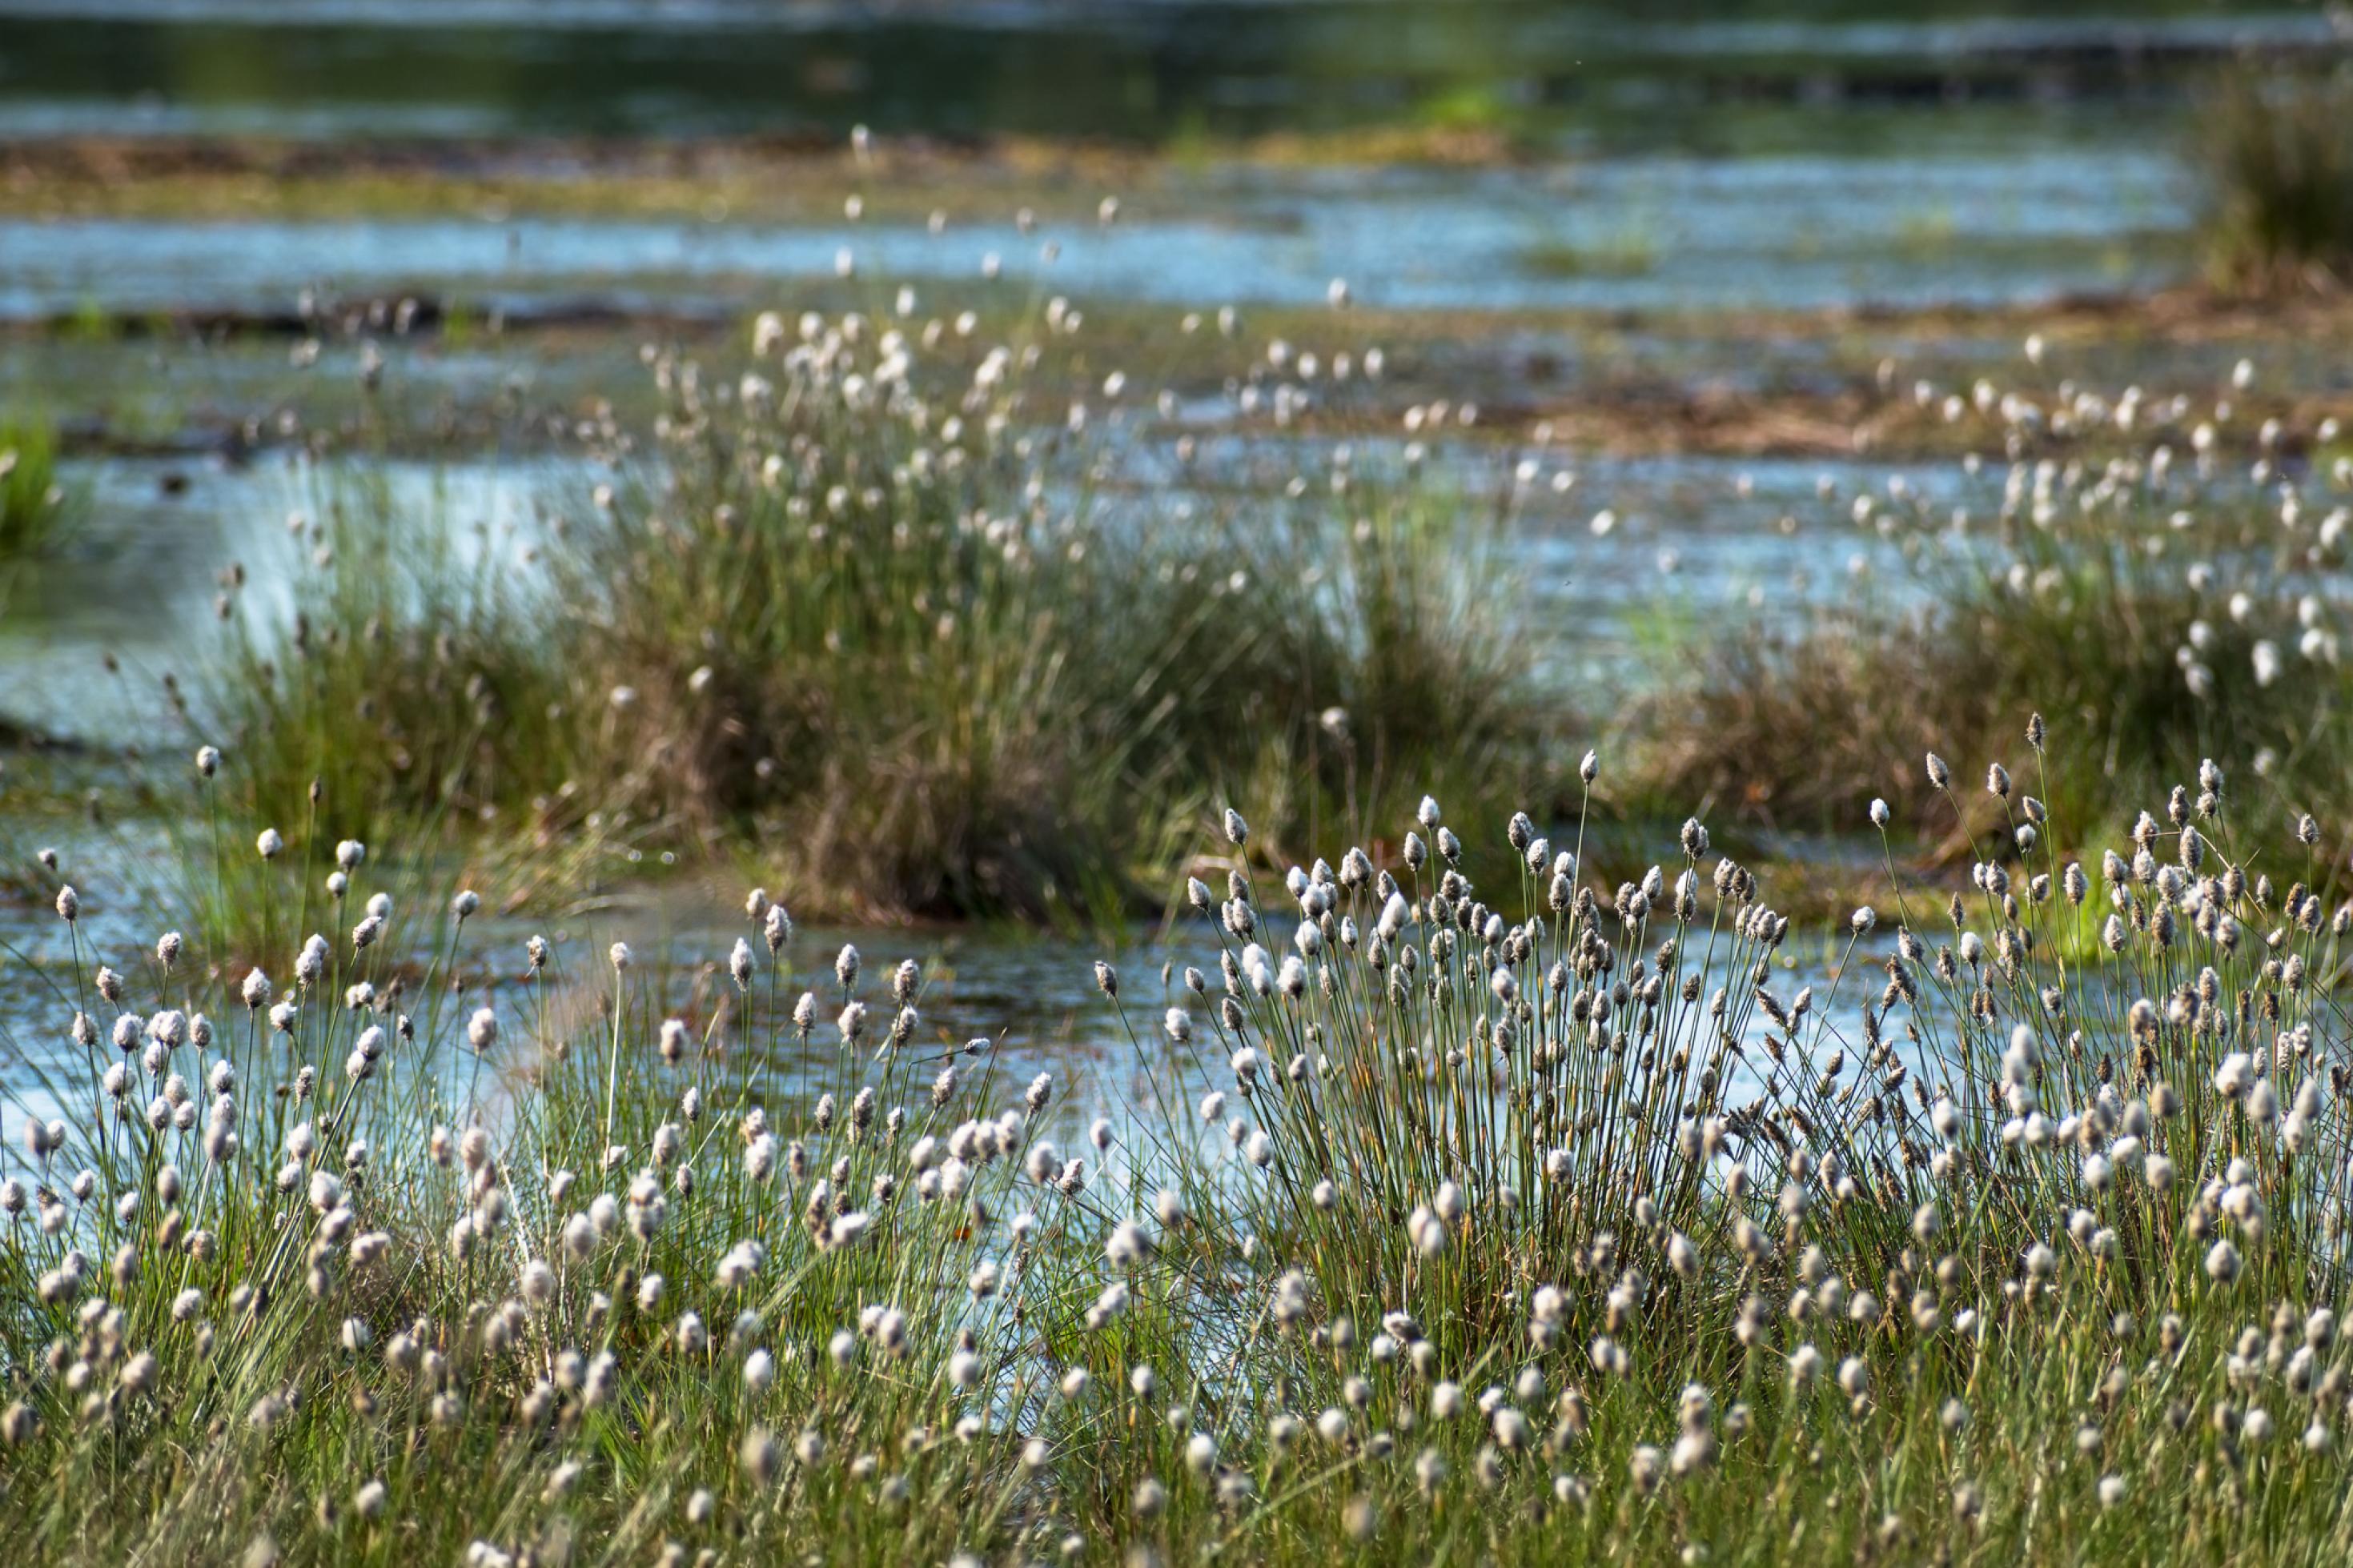 Das Bild zeigt die weißen, flauschigen Blütenstände des Wollgras am Rand von Moortümpeln.